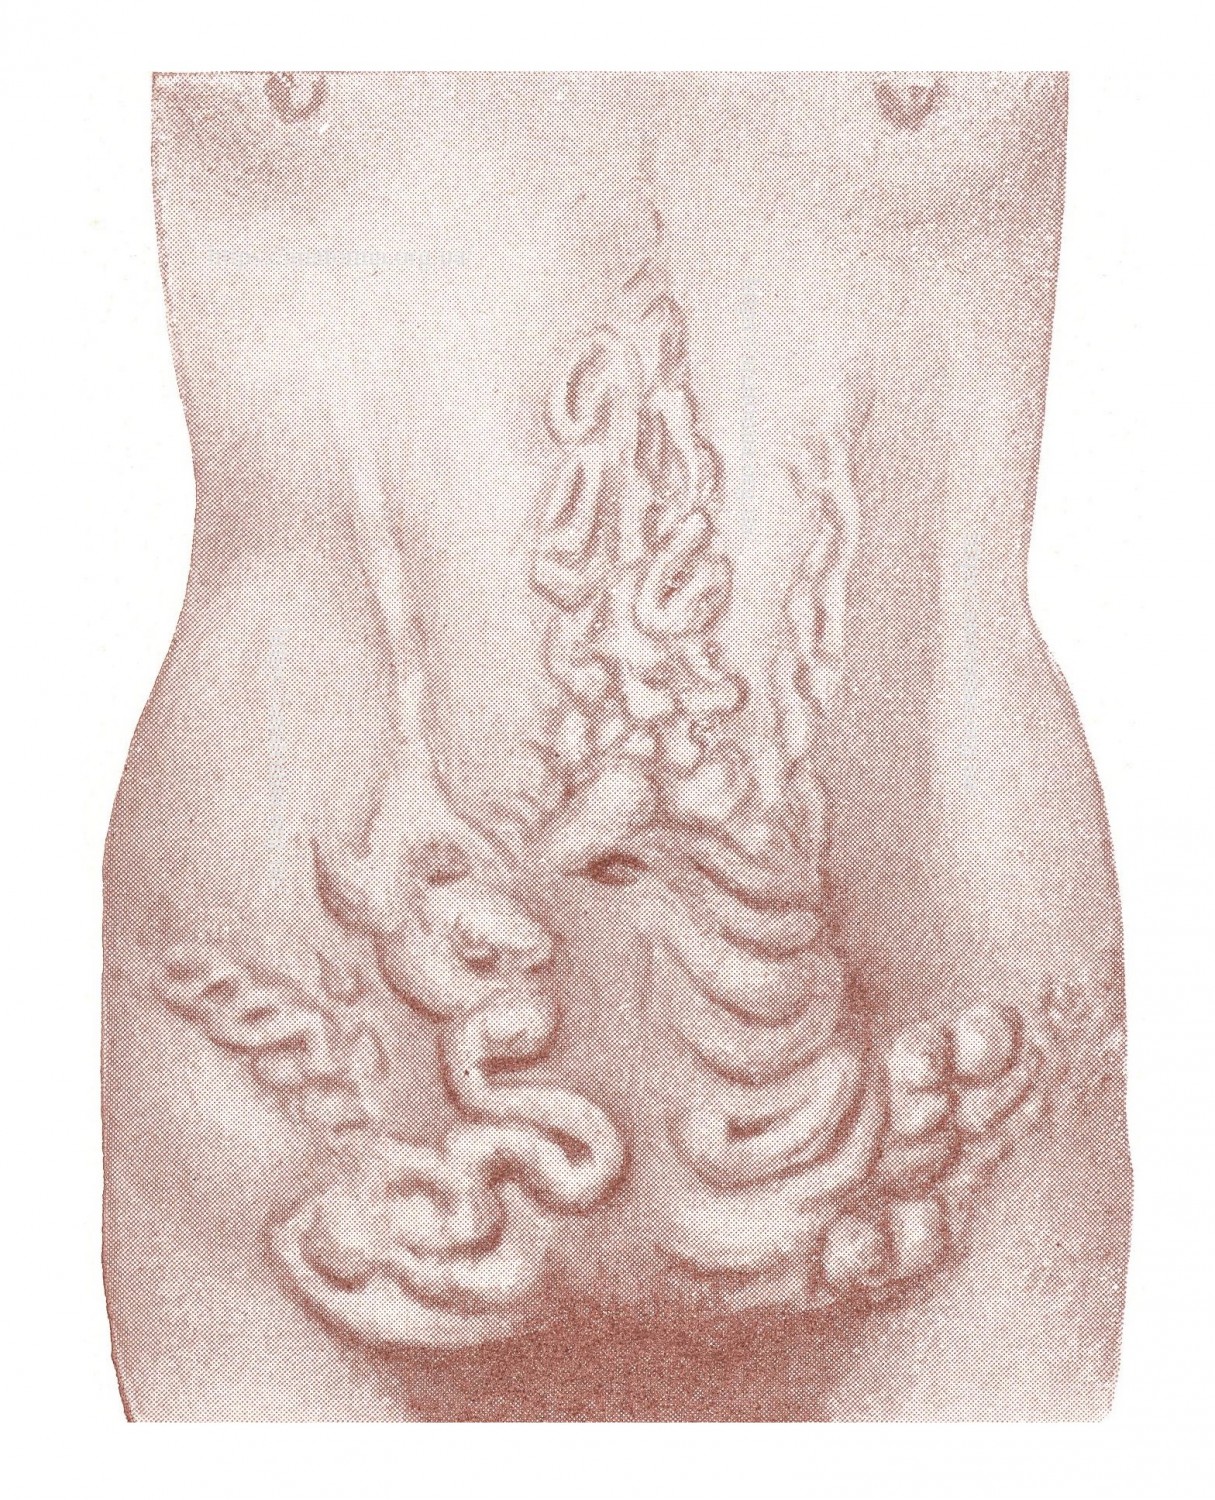 "Caput medusae" после тромбоза нижней половой вены — следствие брюшного тифа